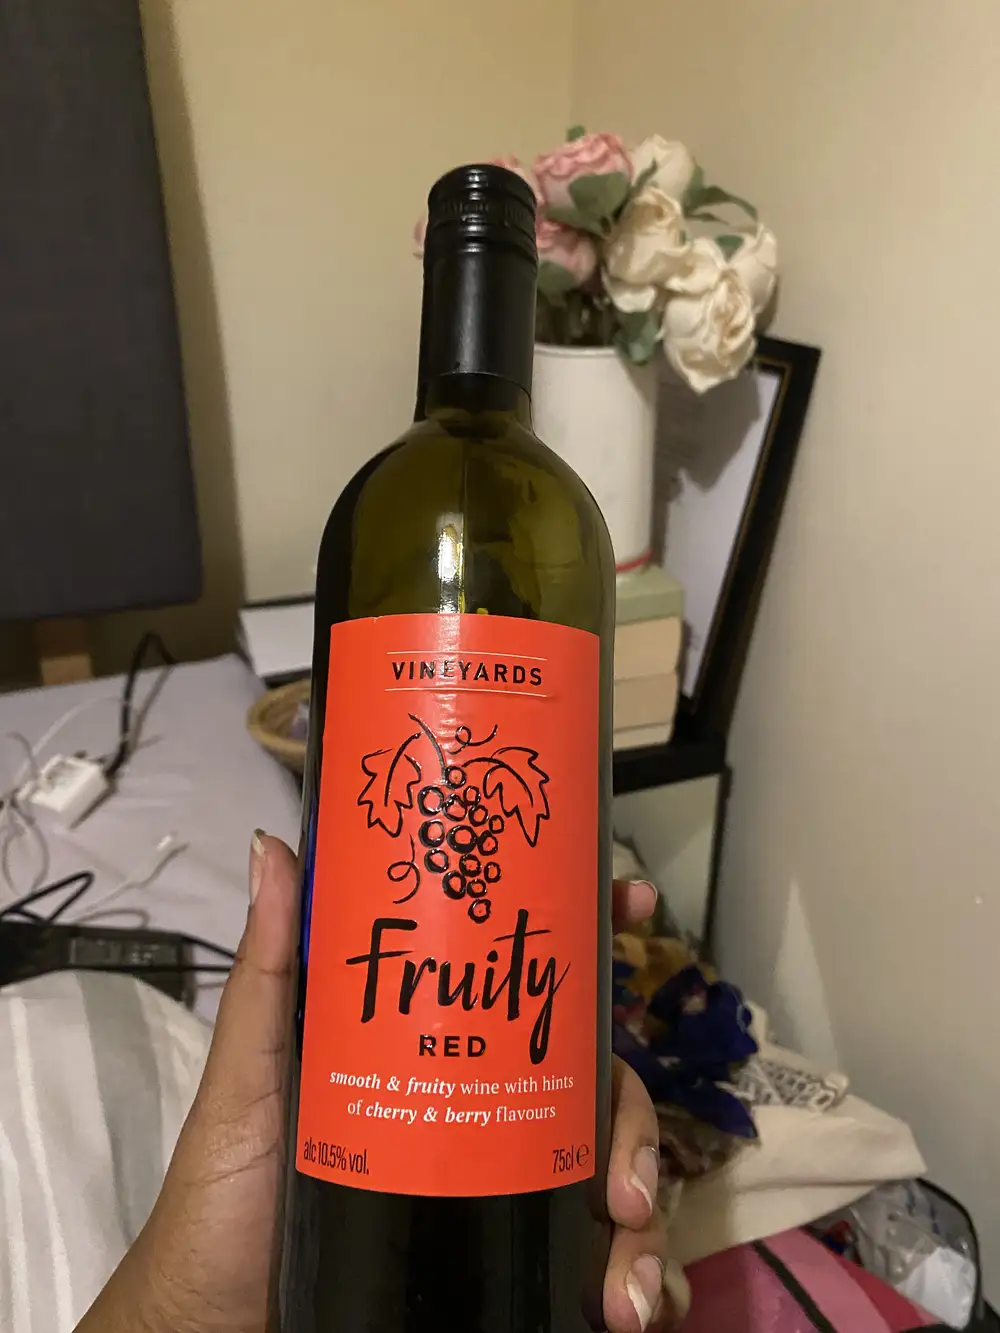 A bottle of fruity wine